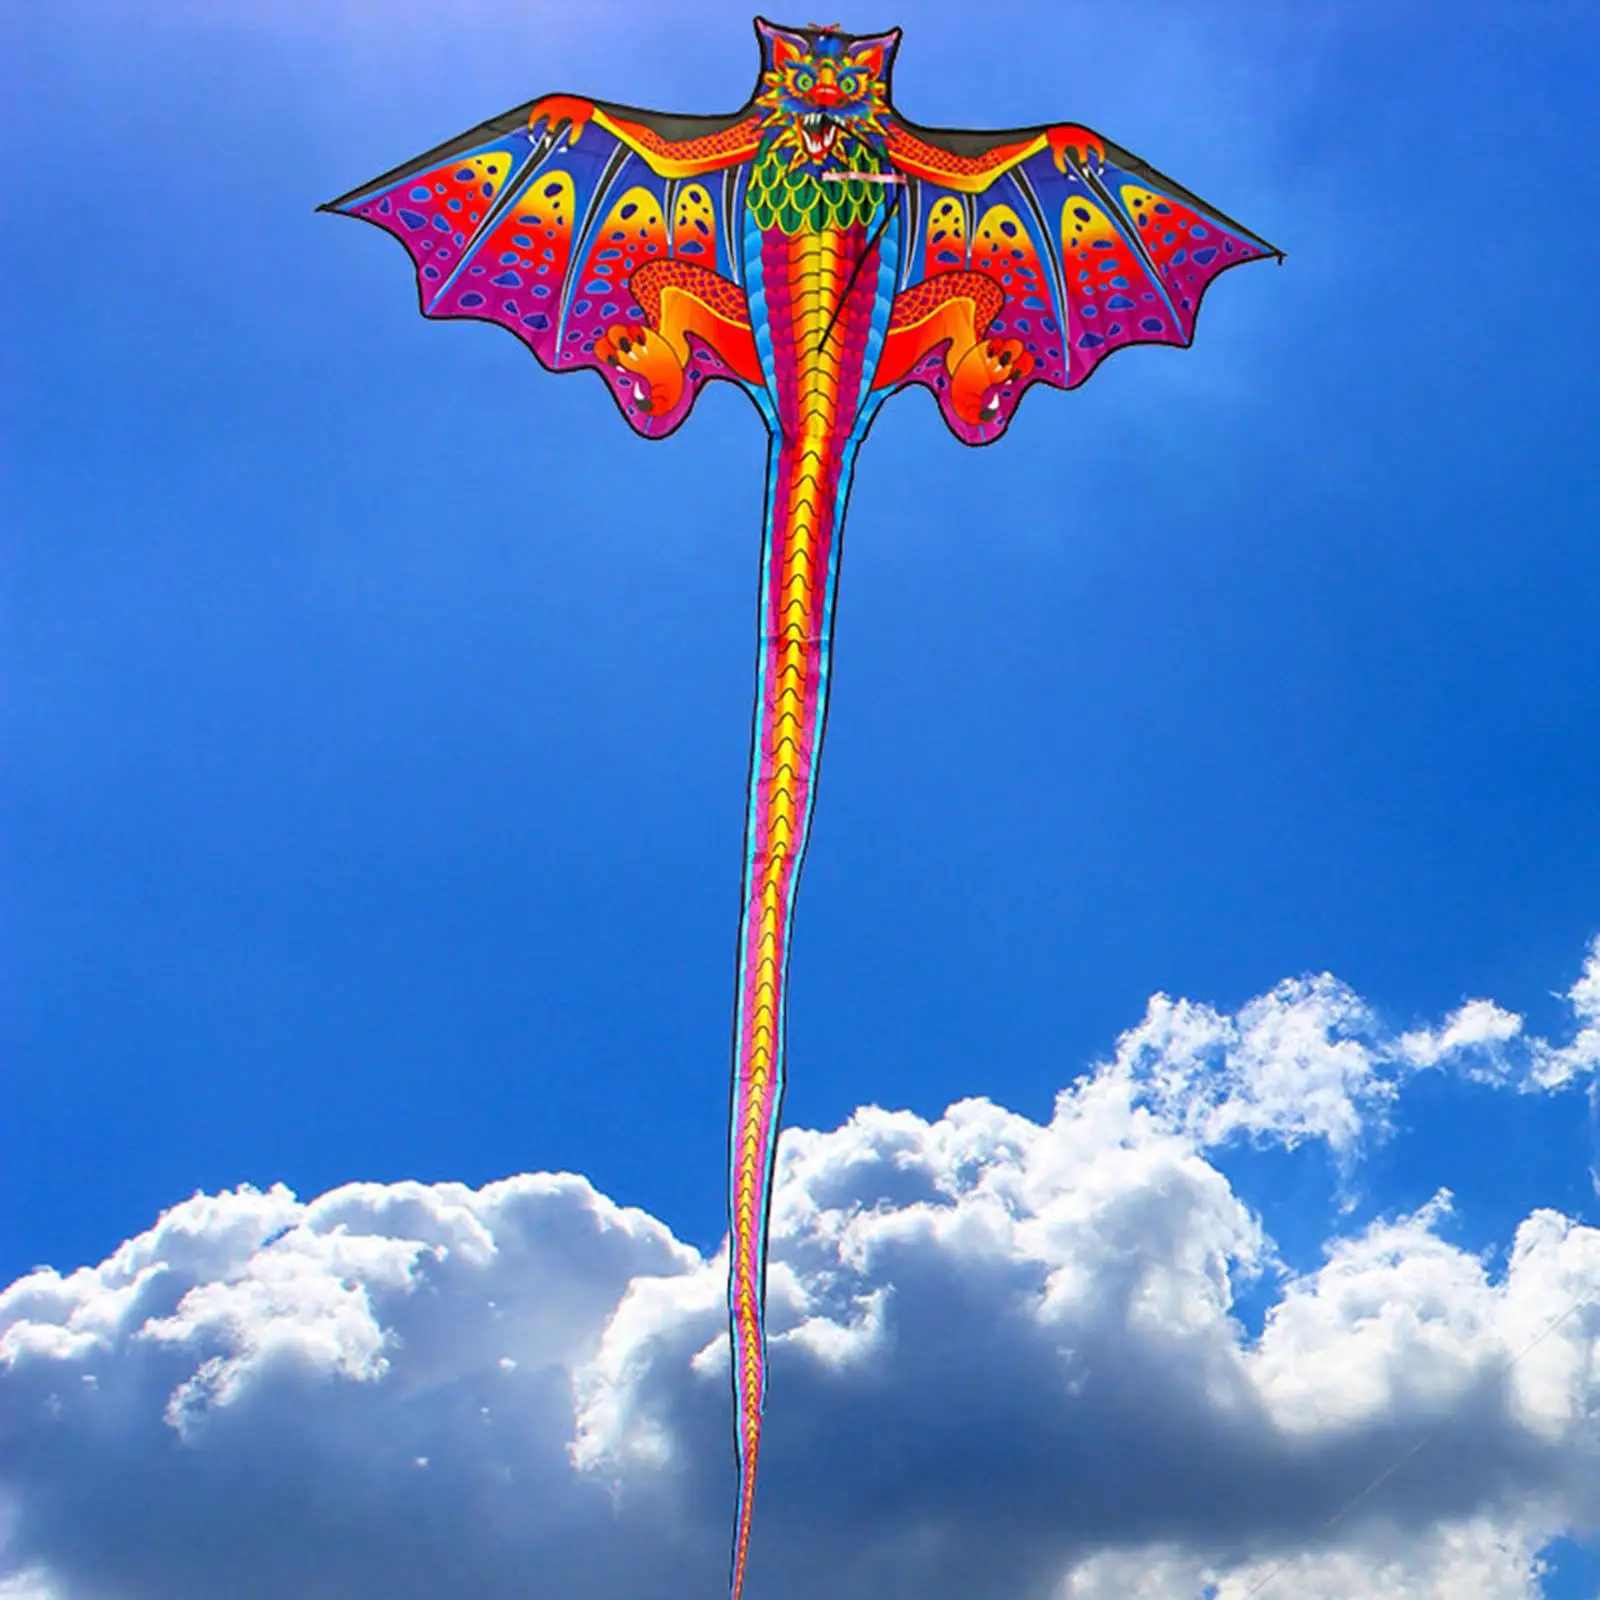 3D Dragon Kite Fun Animal Easy to Fly Giant Single Line Kites for Park Beach